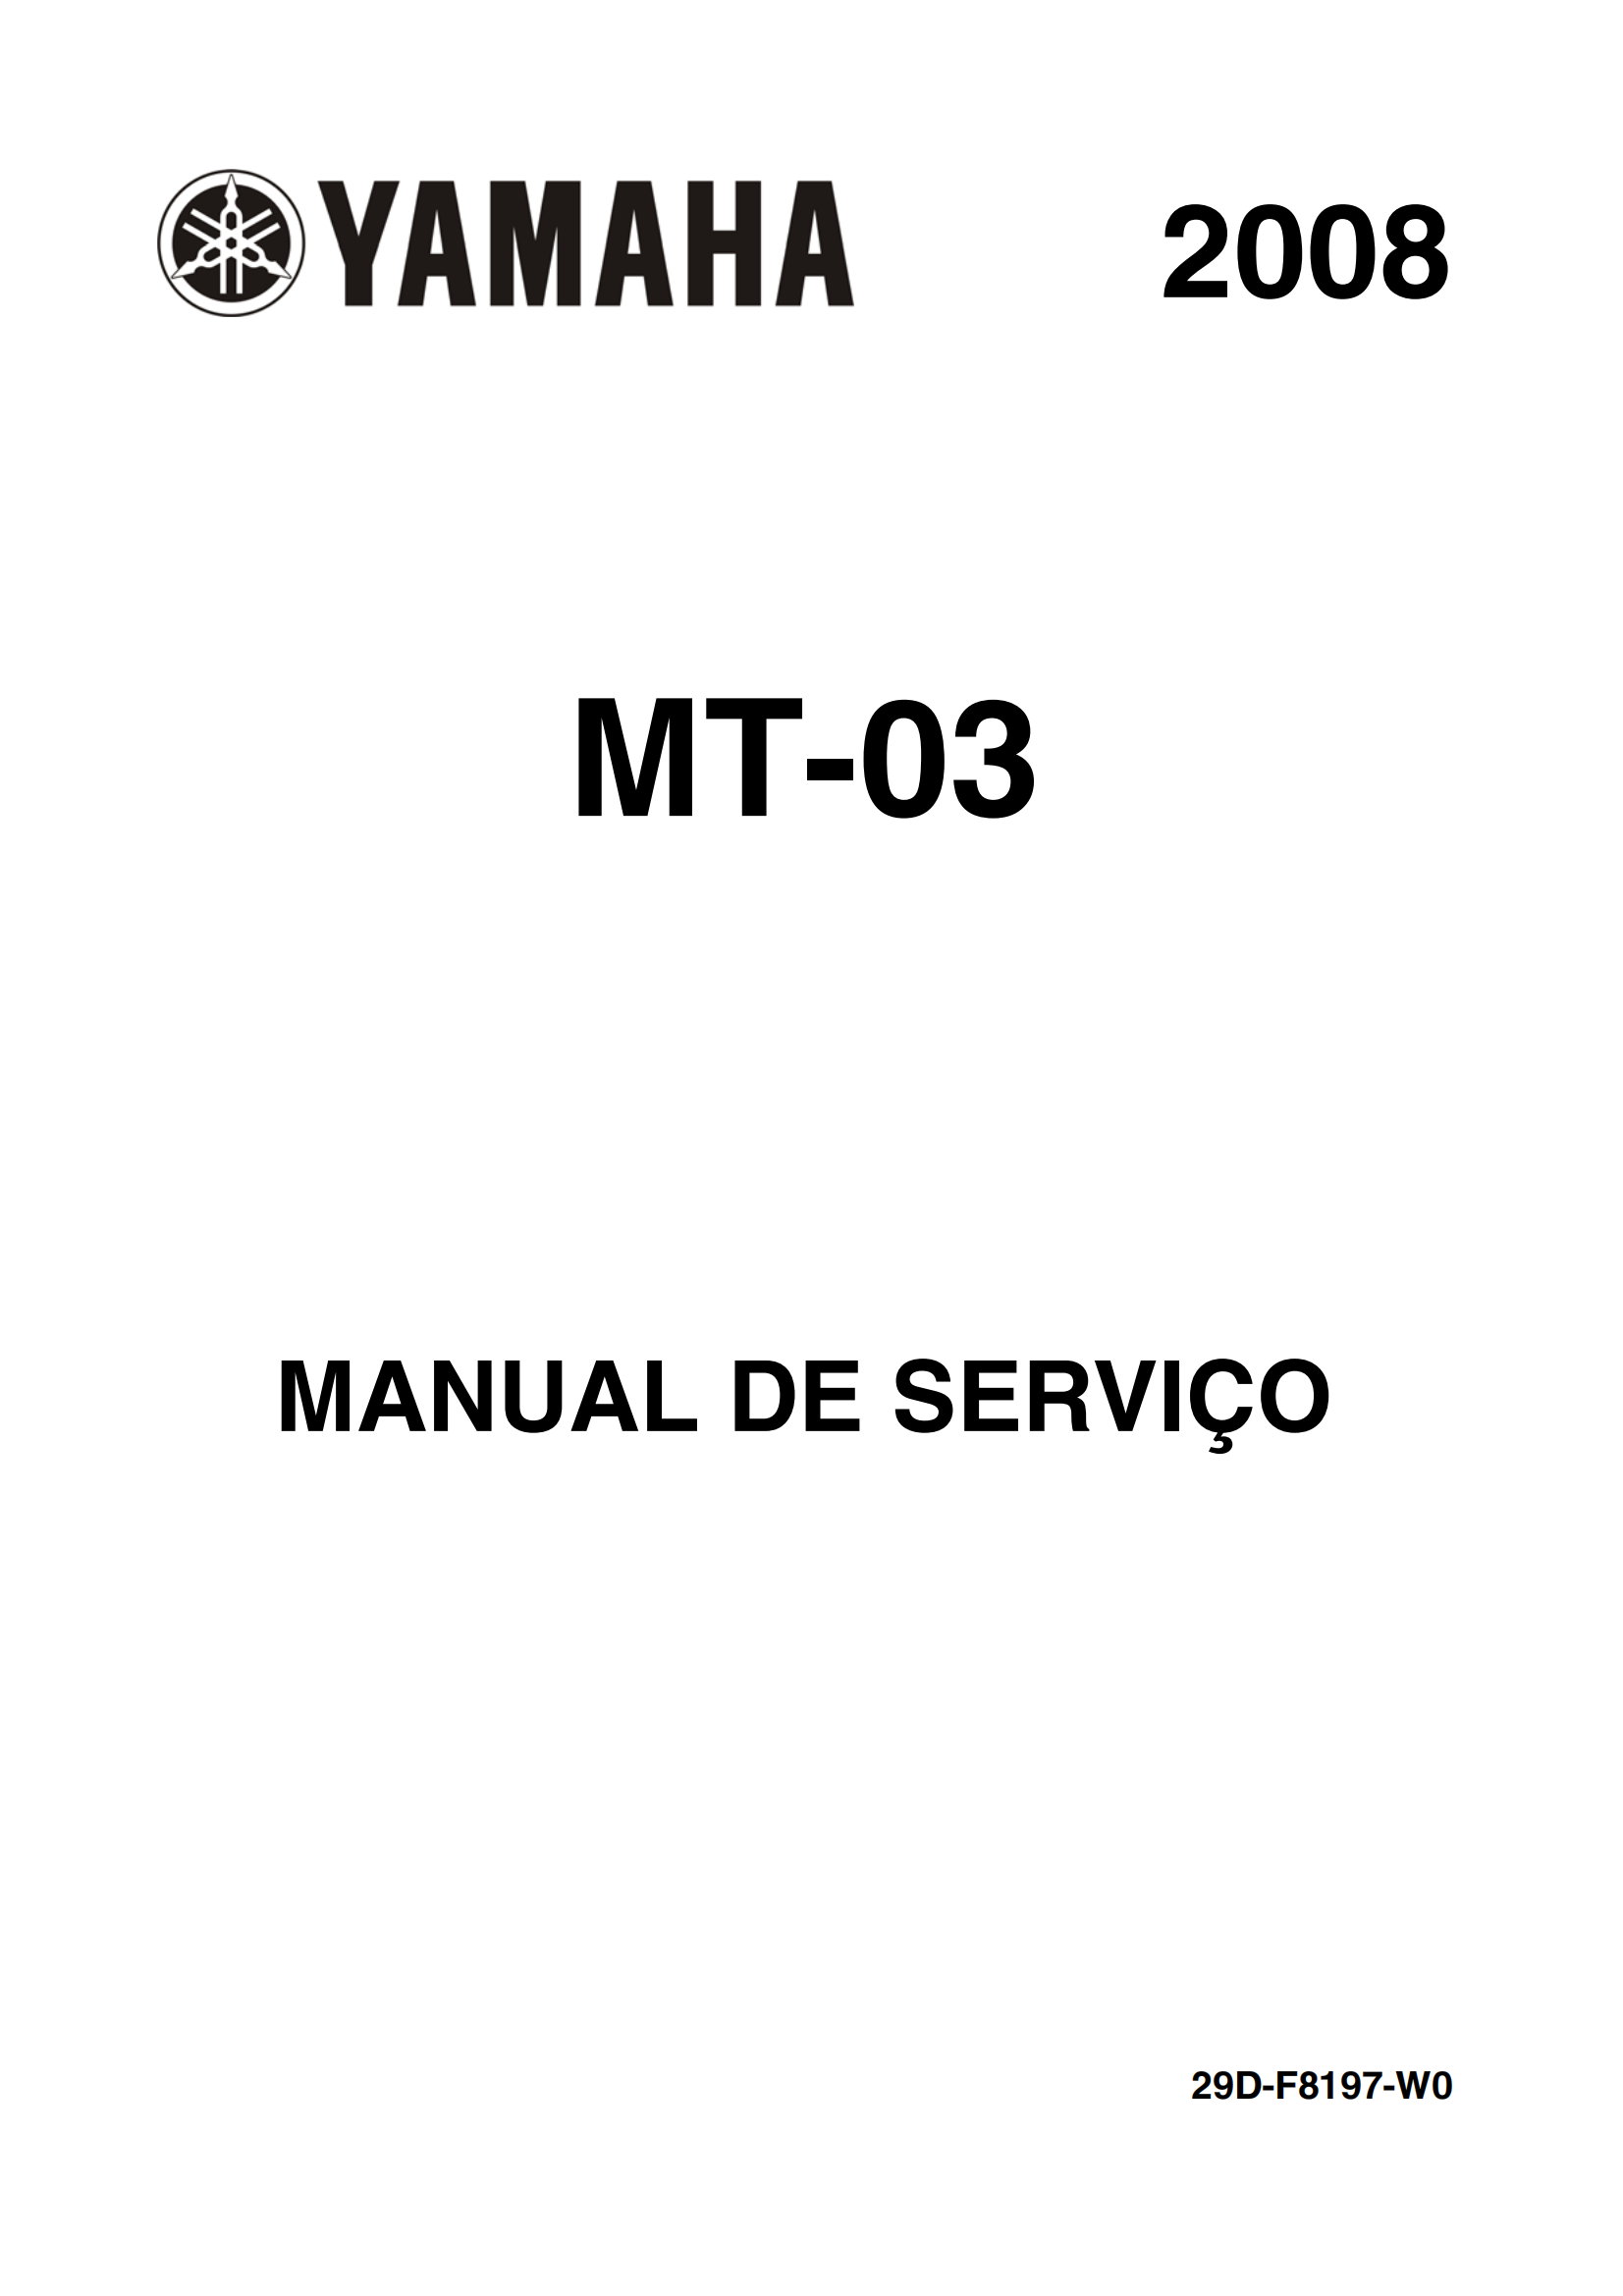 原版葡萄牙语2008年雅马哈mt03 660维修手册yamaha mt03 660维修手册插图